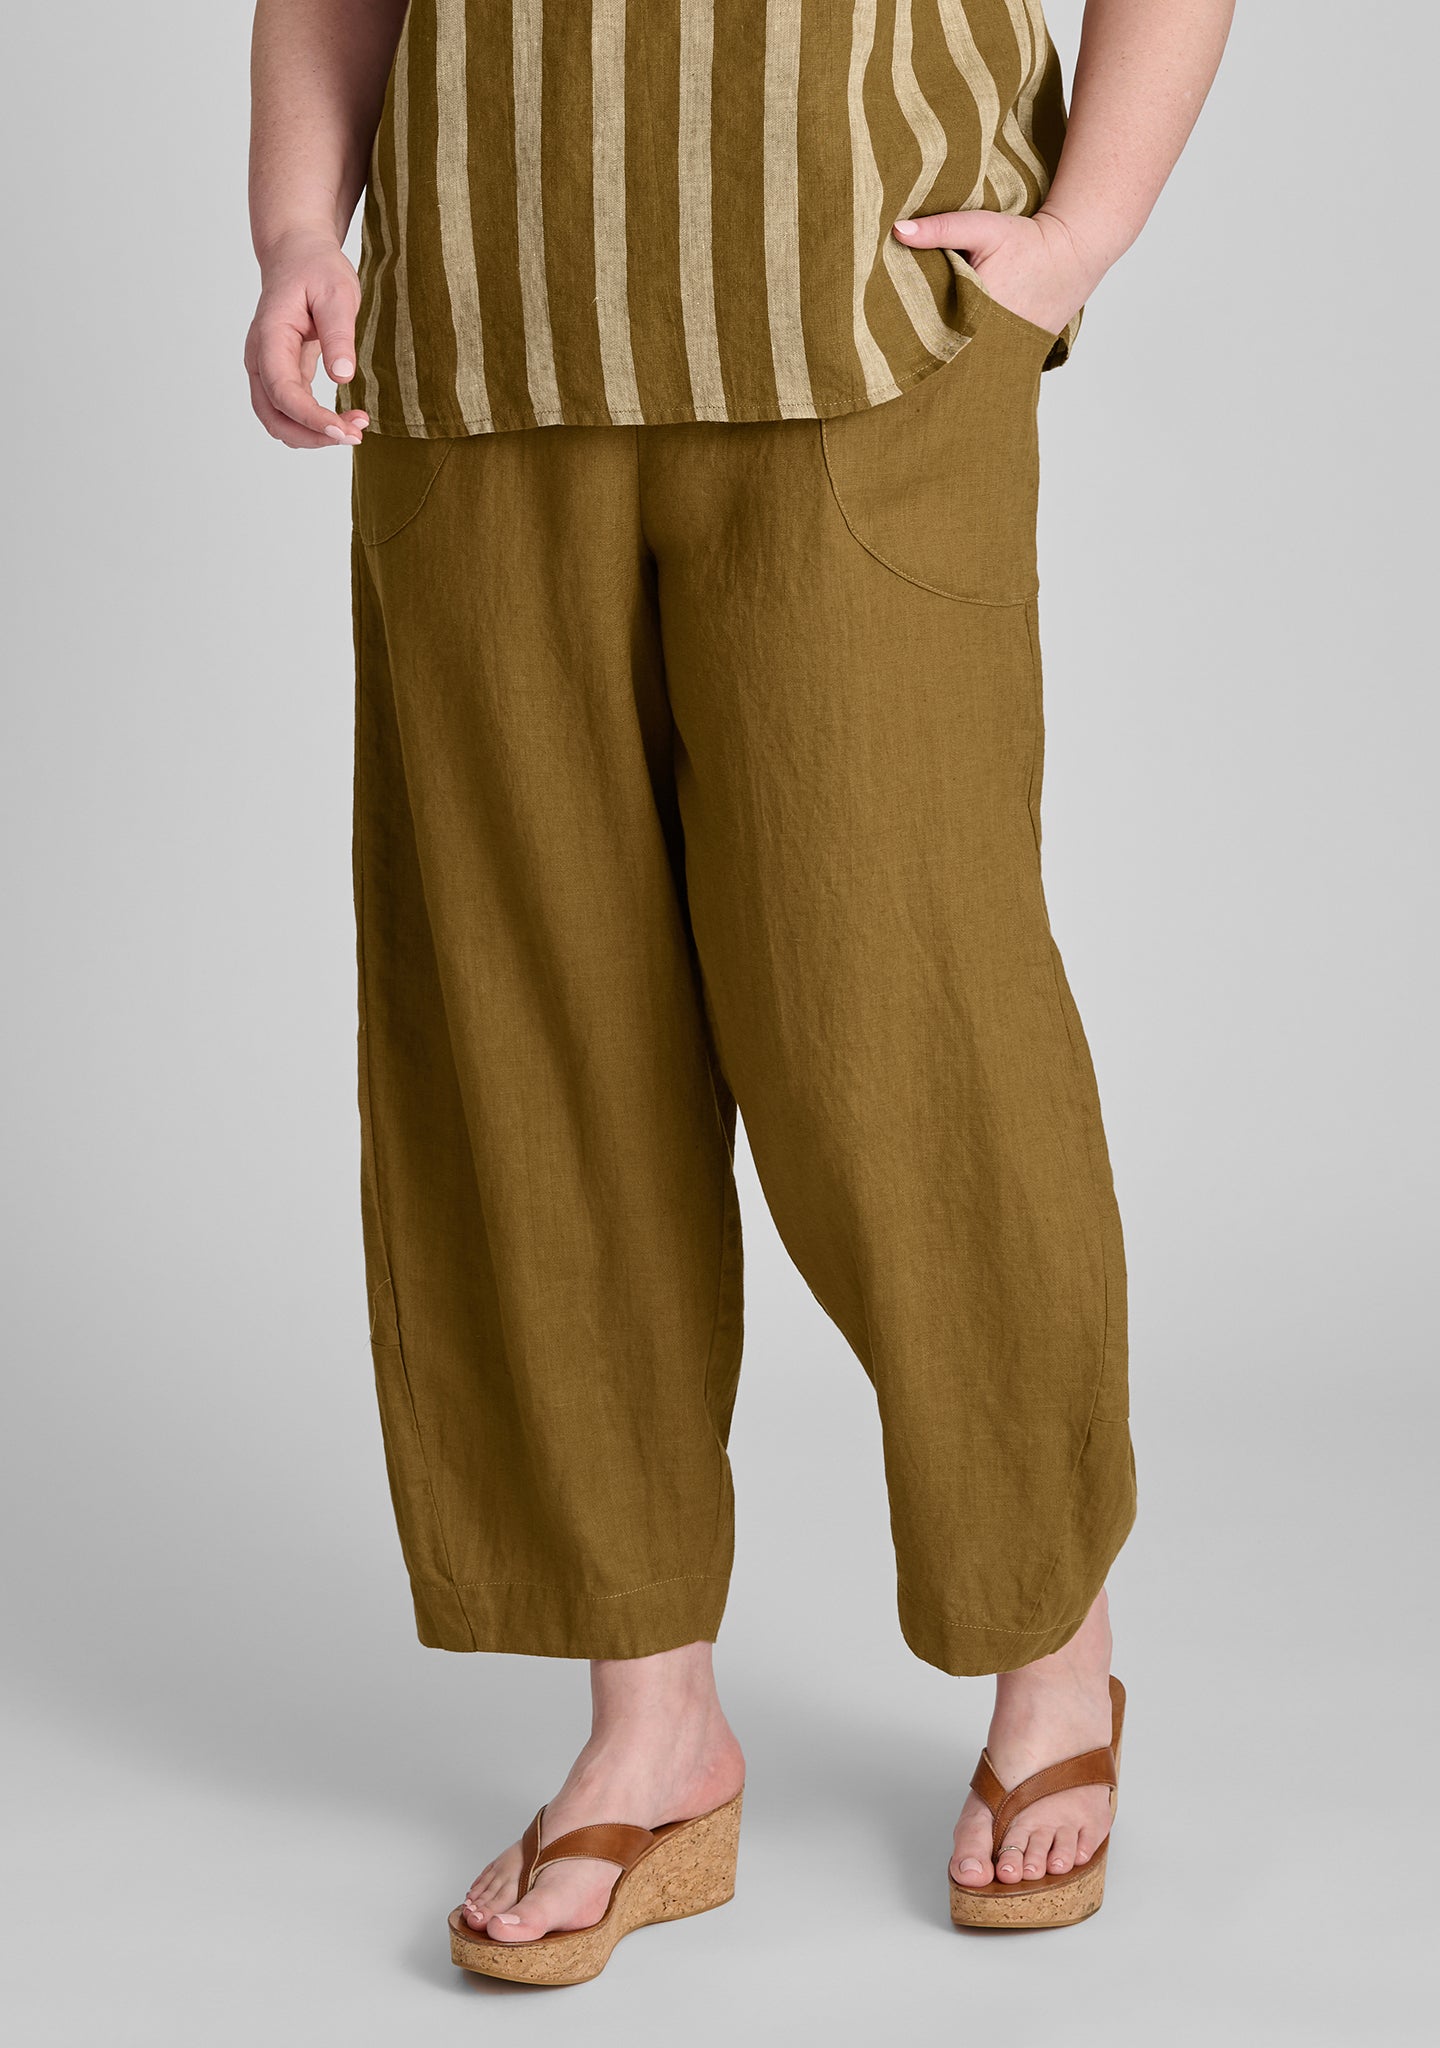 seamly pant linen pants brown